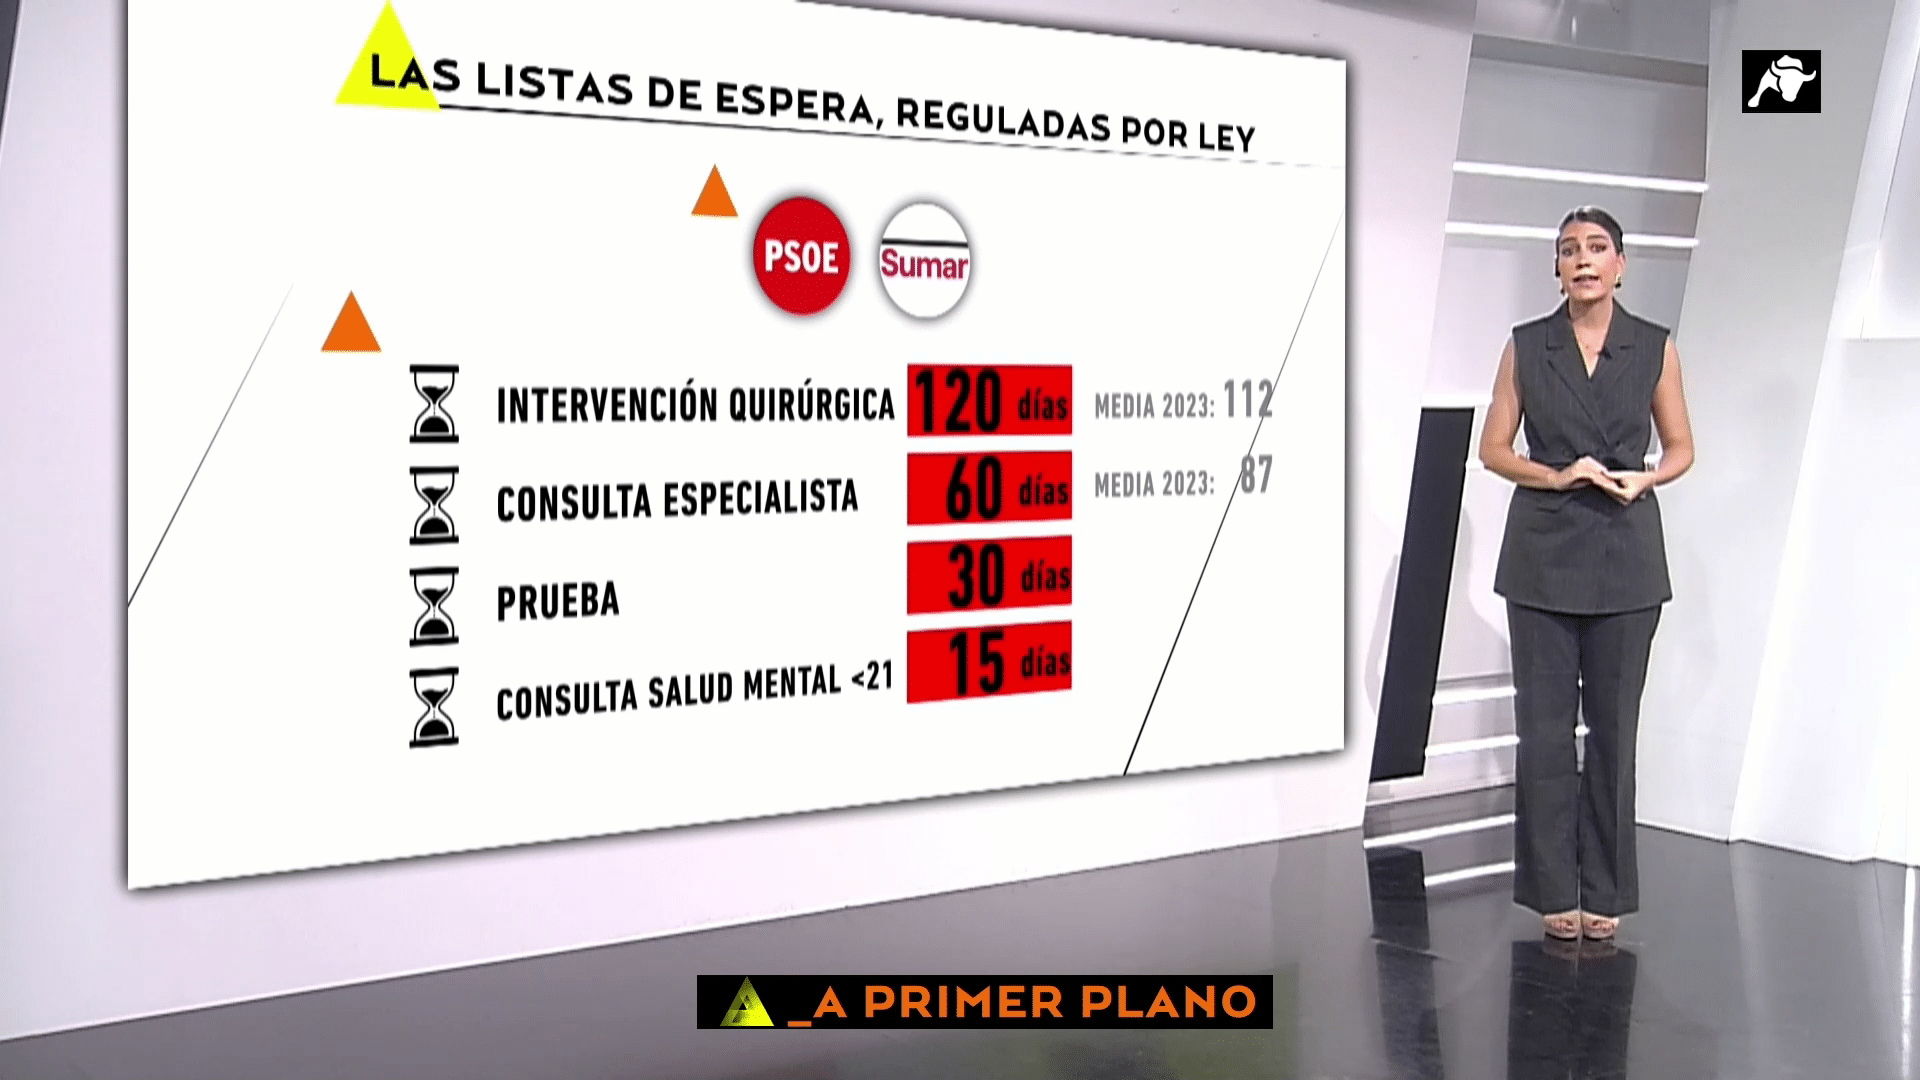 El polémico plan de Sánchez para ‘topar’ las listas de espera: «irreal» e «ingestionable» para los expertos